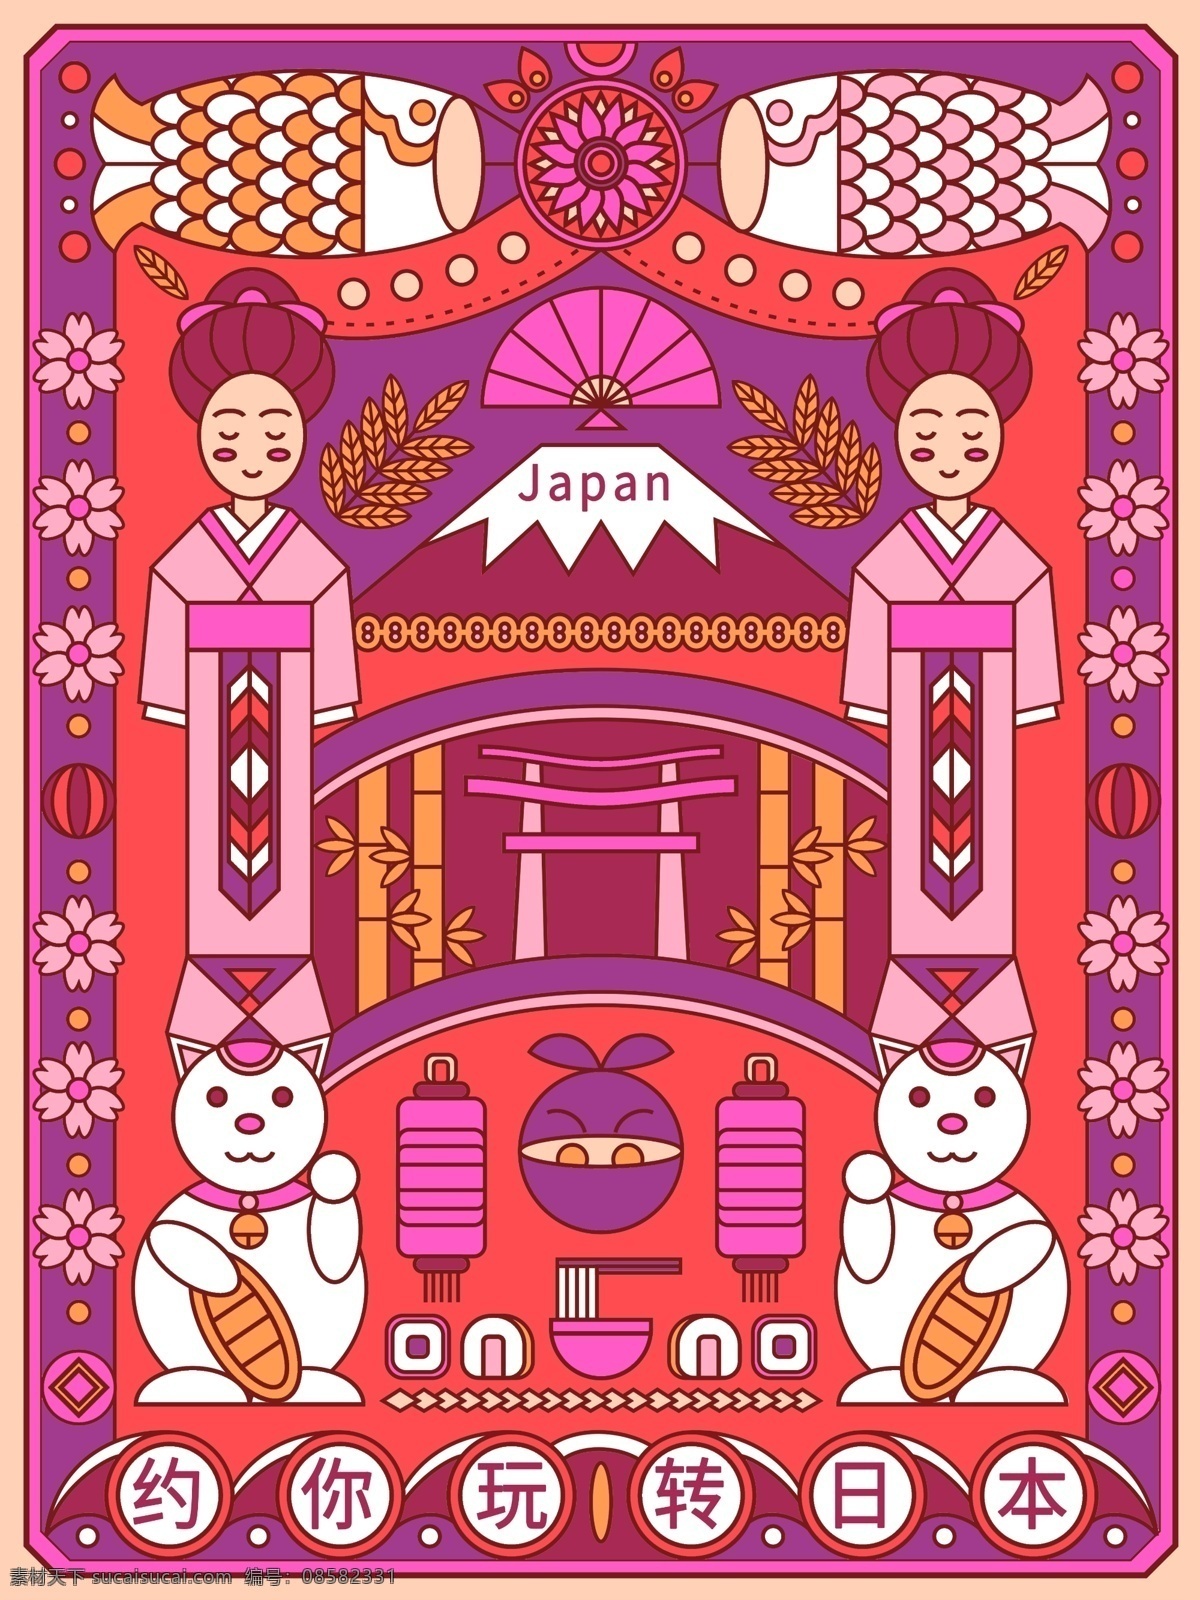 原创 趋势 线性 视界 风格 日本旅游 海报 宣传单 线性视界 紫红 手绘 日本 和服 樱花 扇子 富士山 灯笼 竹子 猫 忍者 美食 寿司 鱼 旅游 日本文化